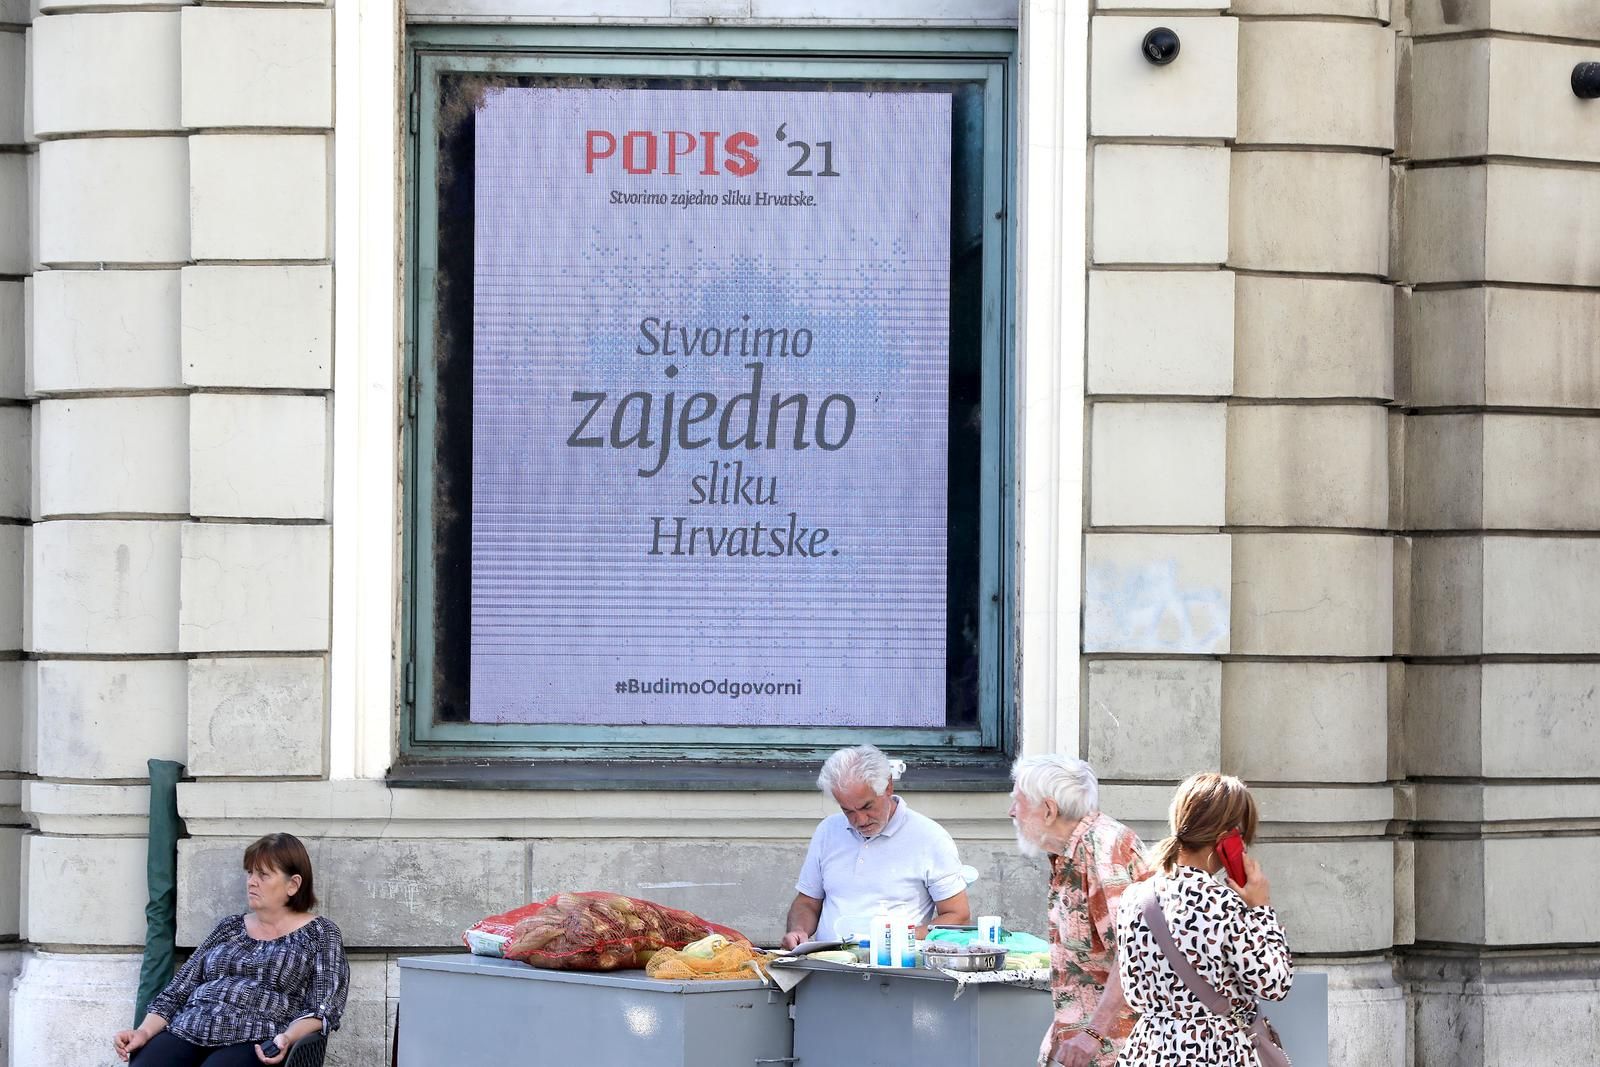 28.09.2021., Zagreb - Nakoni dva tjedna samopopisivanja danas je pocelo terensko popisivanje kao zavrsna faza Popisa stanovnistva 2021. godine.
Photo: Patrik Macek/PIXSELL